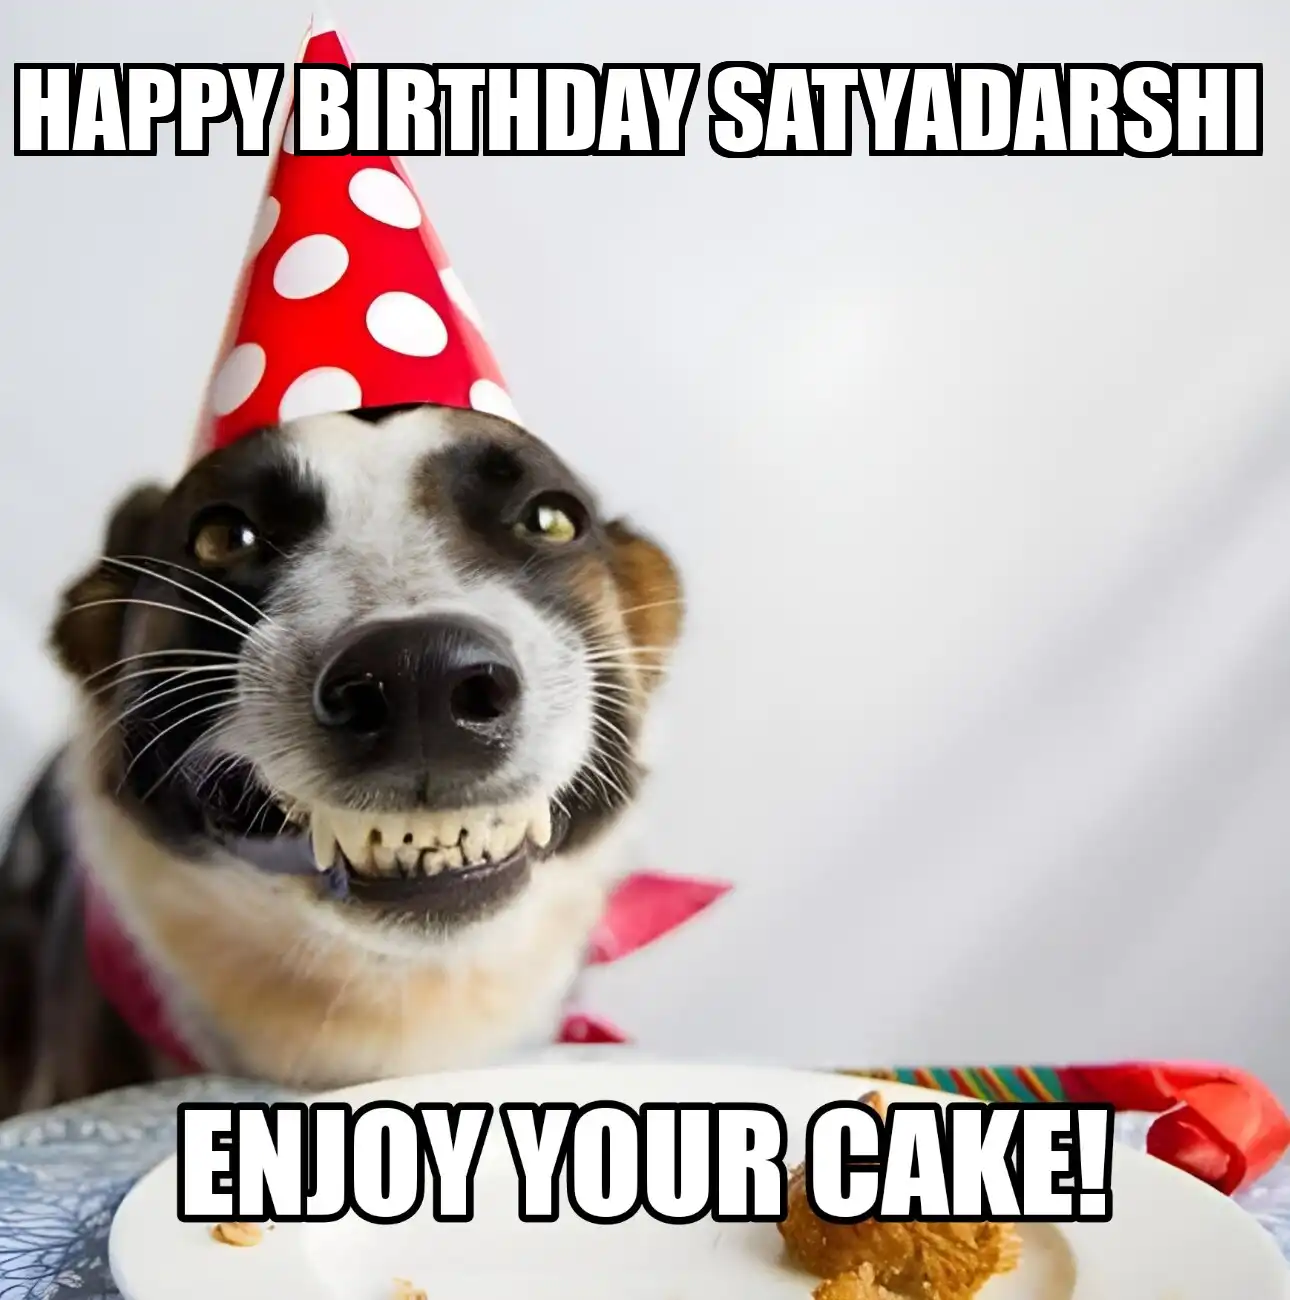 Happy Birthday Satyadarshi Enjoy Your Cake Dog Meme